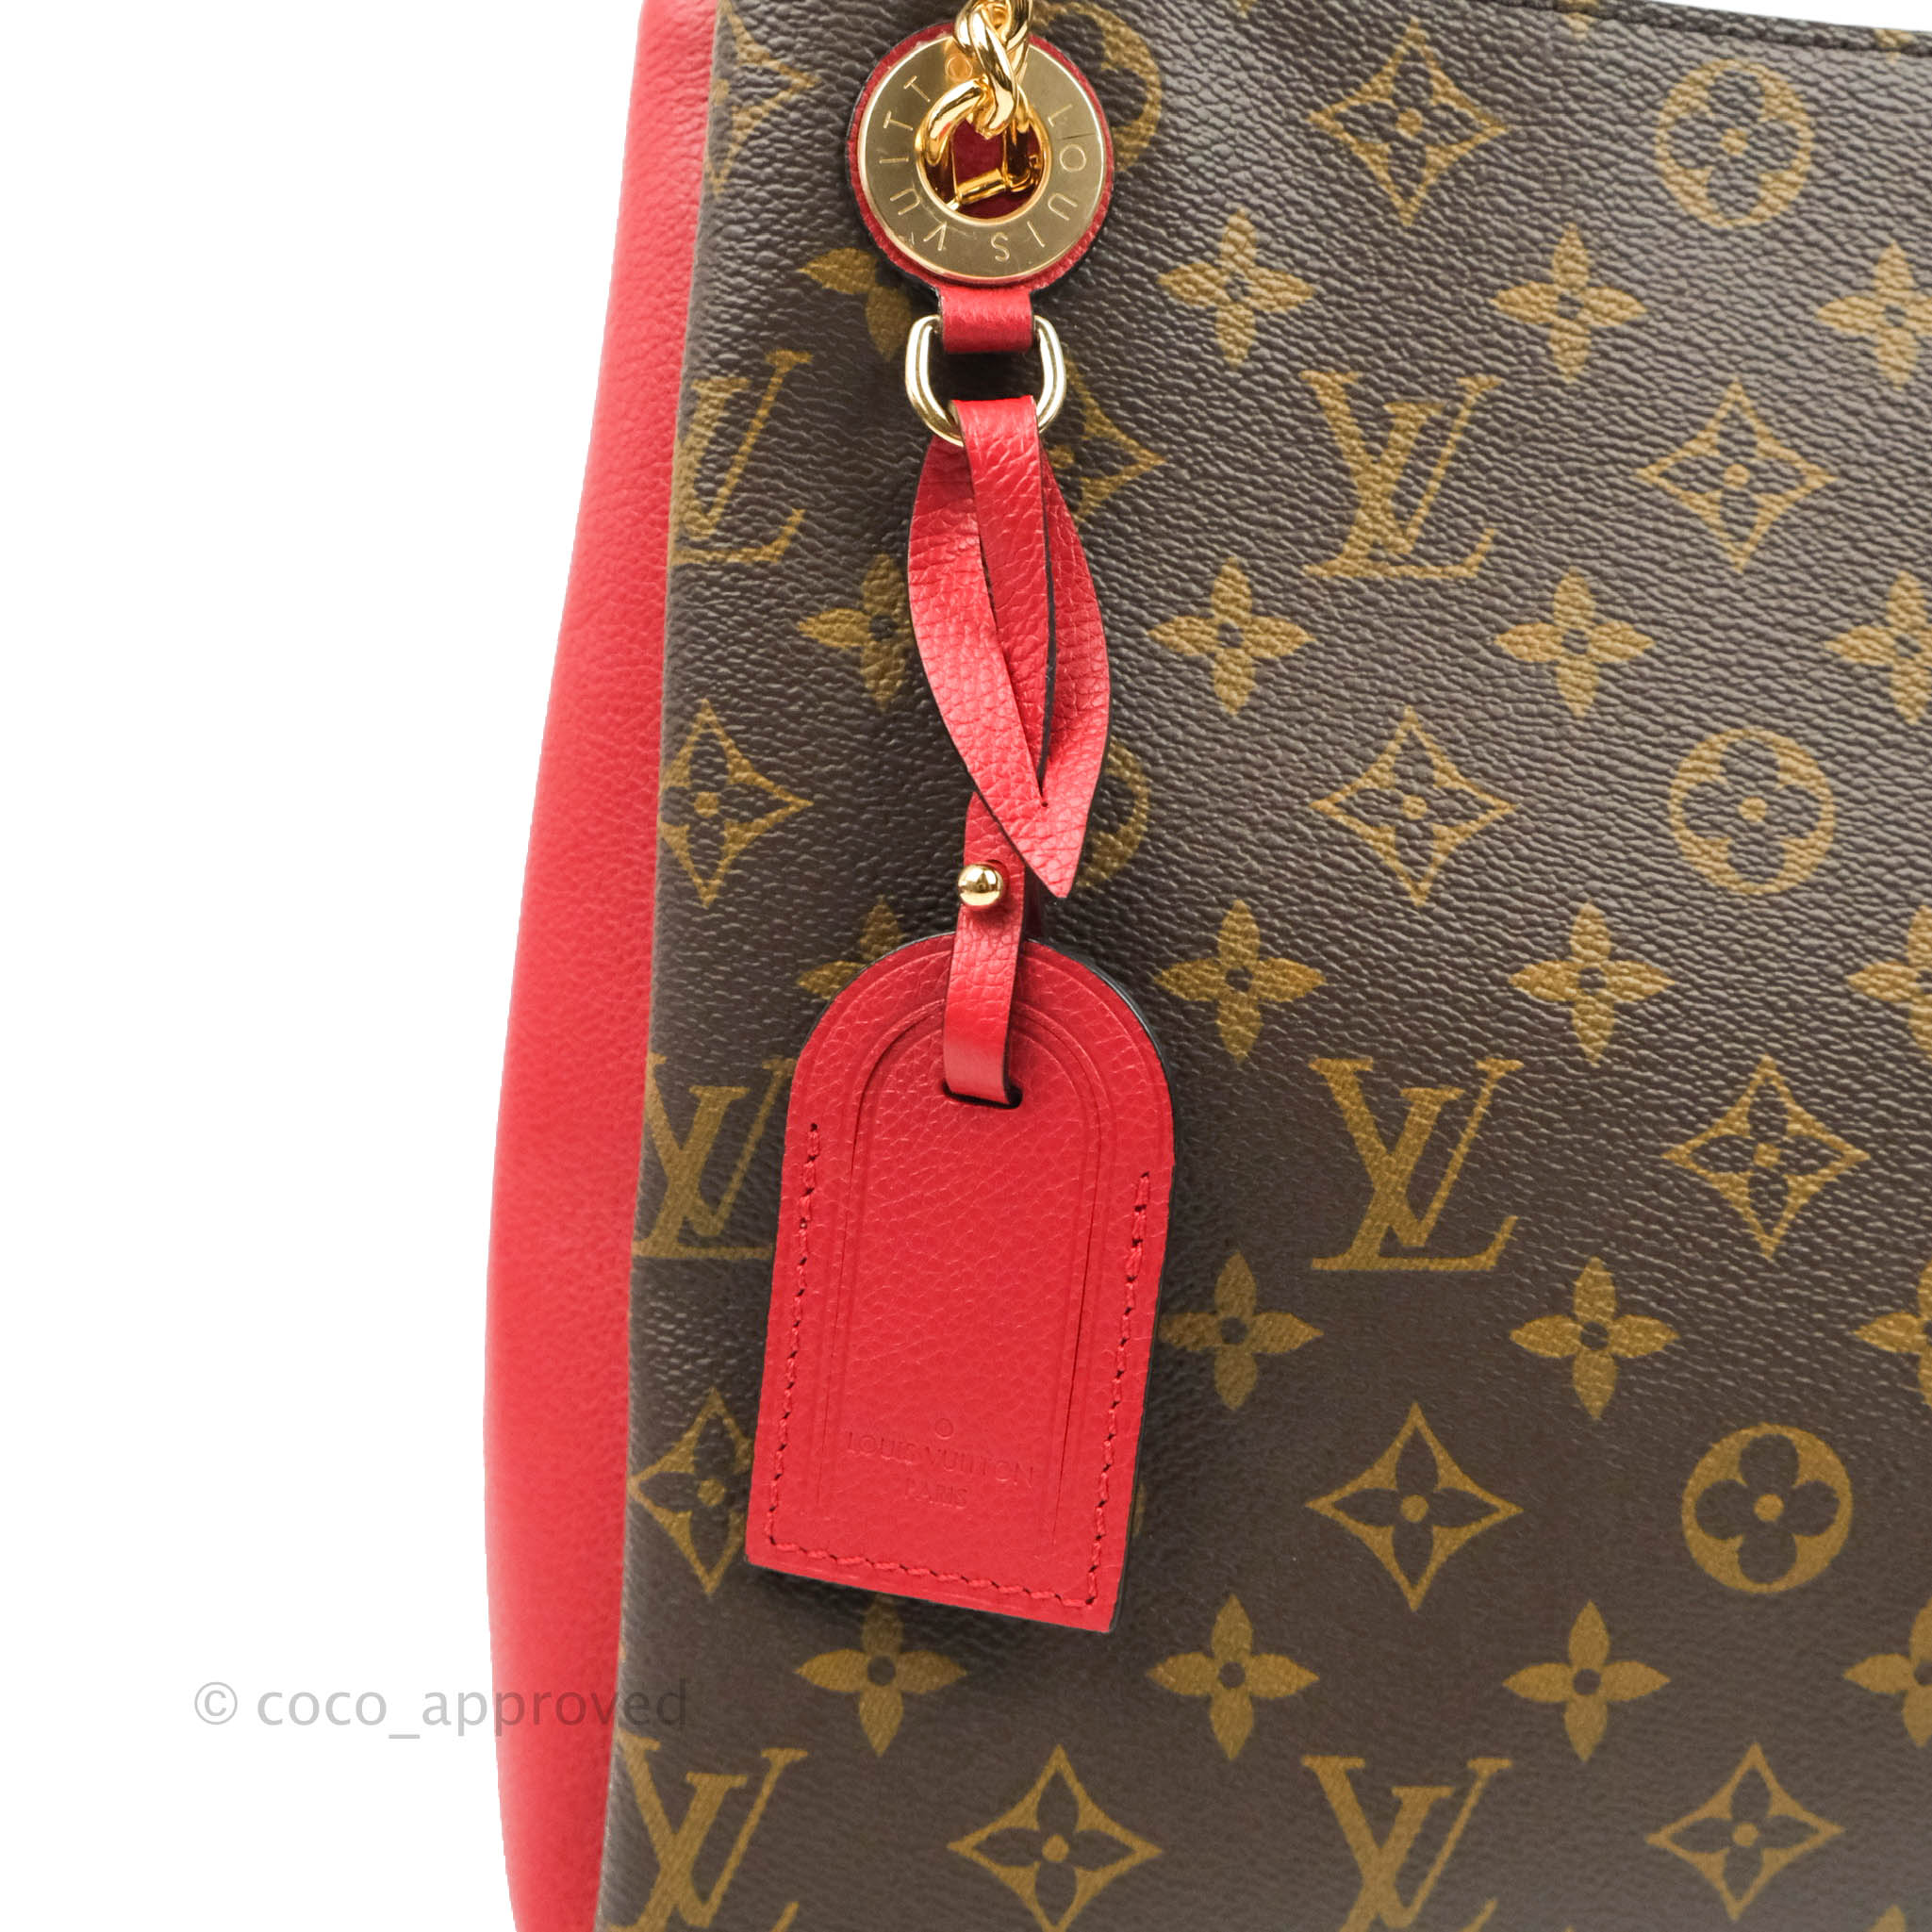 Louis Vuitton, Bags, Louis Vuitton Surene Mm Canvas Leather Monogram Tote